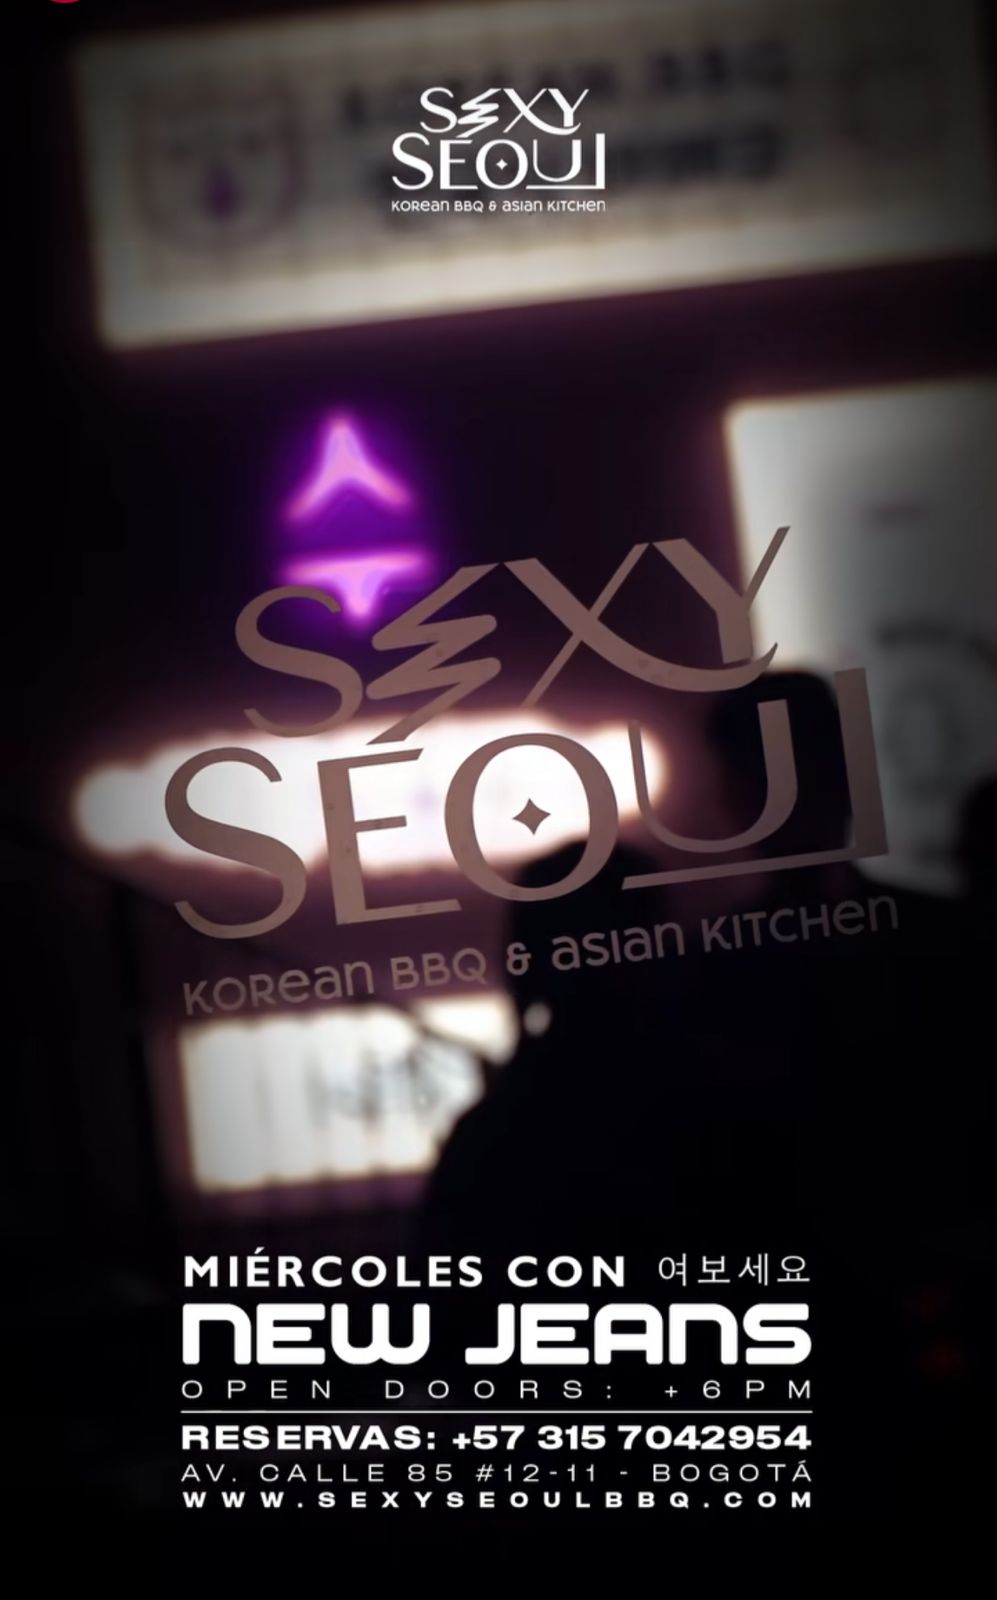 Korean BBQ & Asian Kitchen Sexy Seoul 